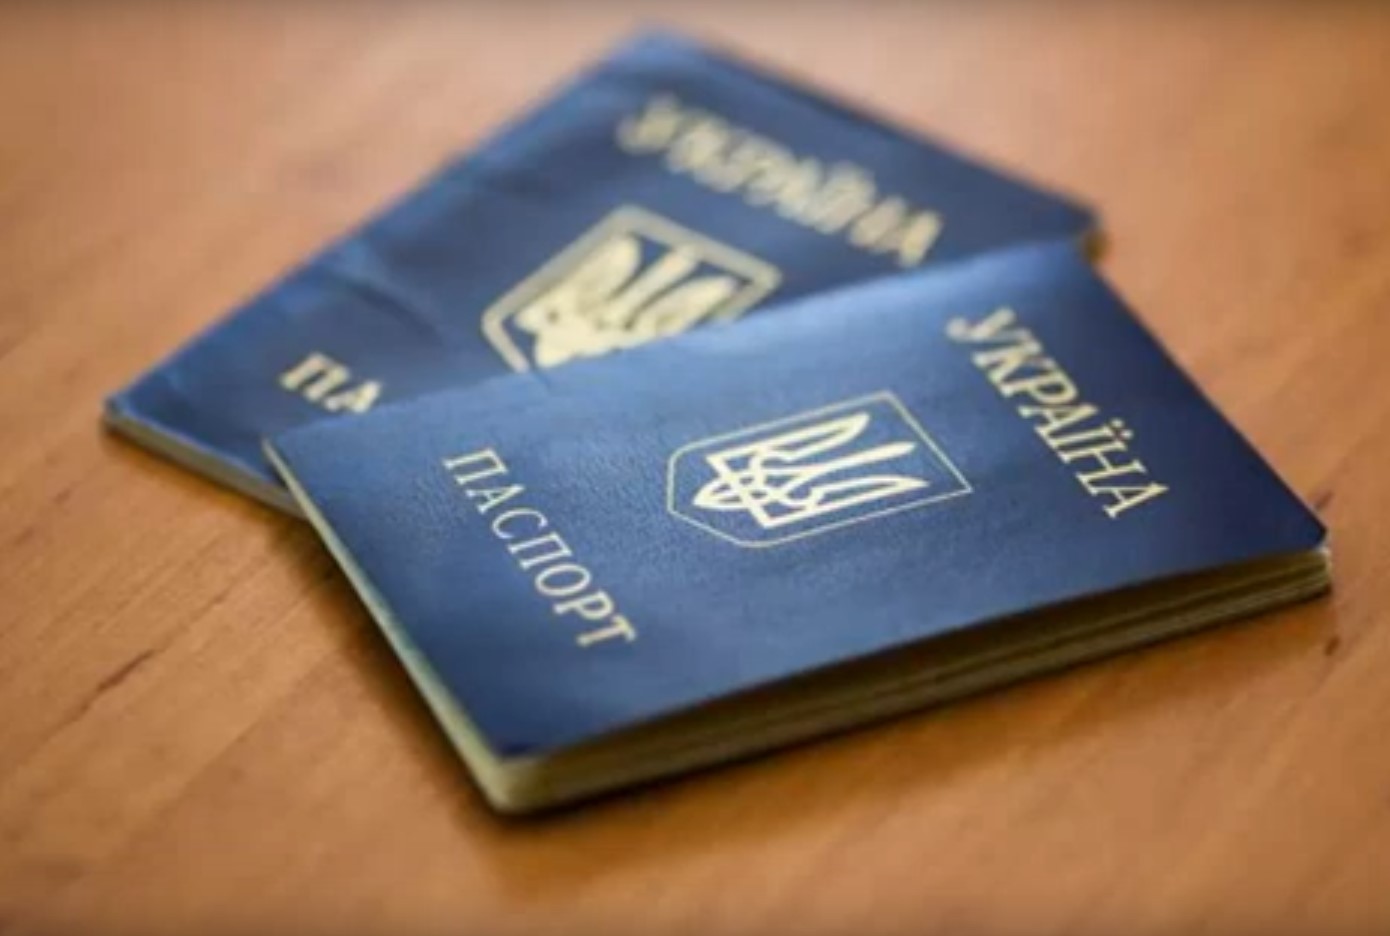 Старые паспорта станут недействительными: в Раде готов закон - избавиться от книжечек